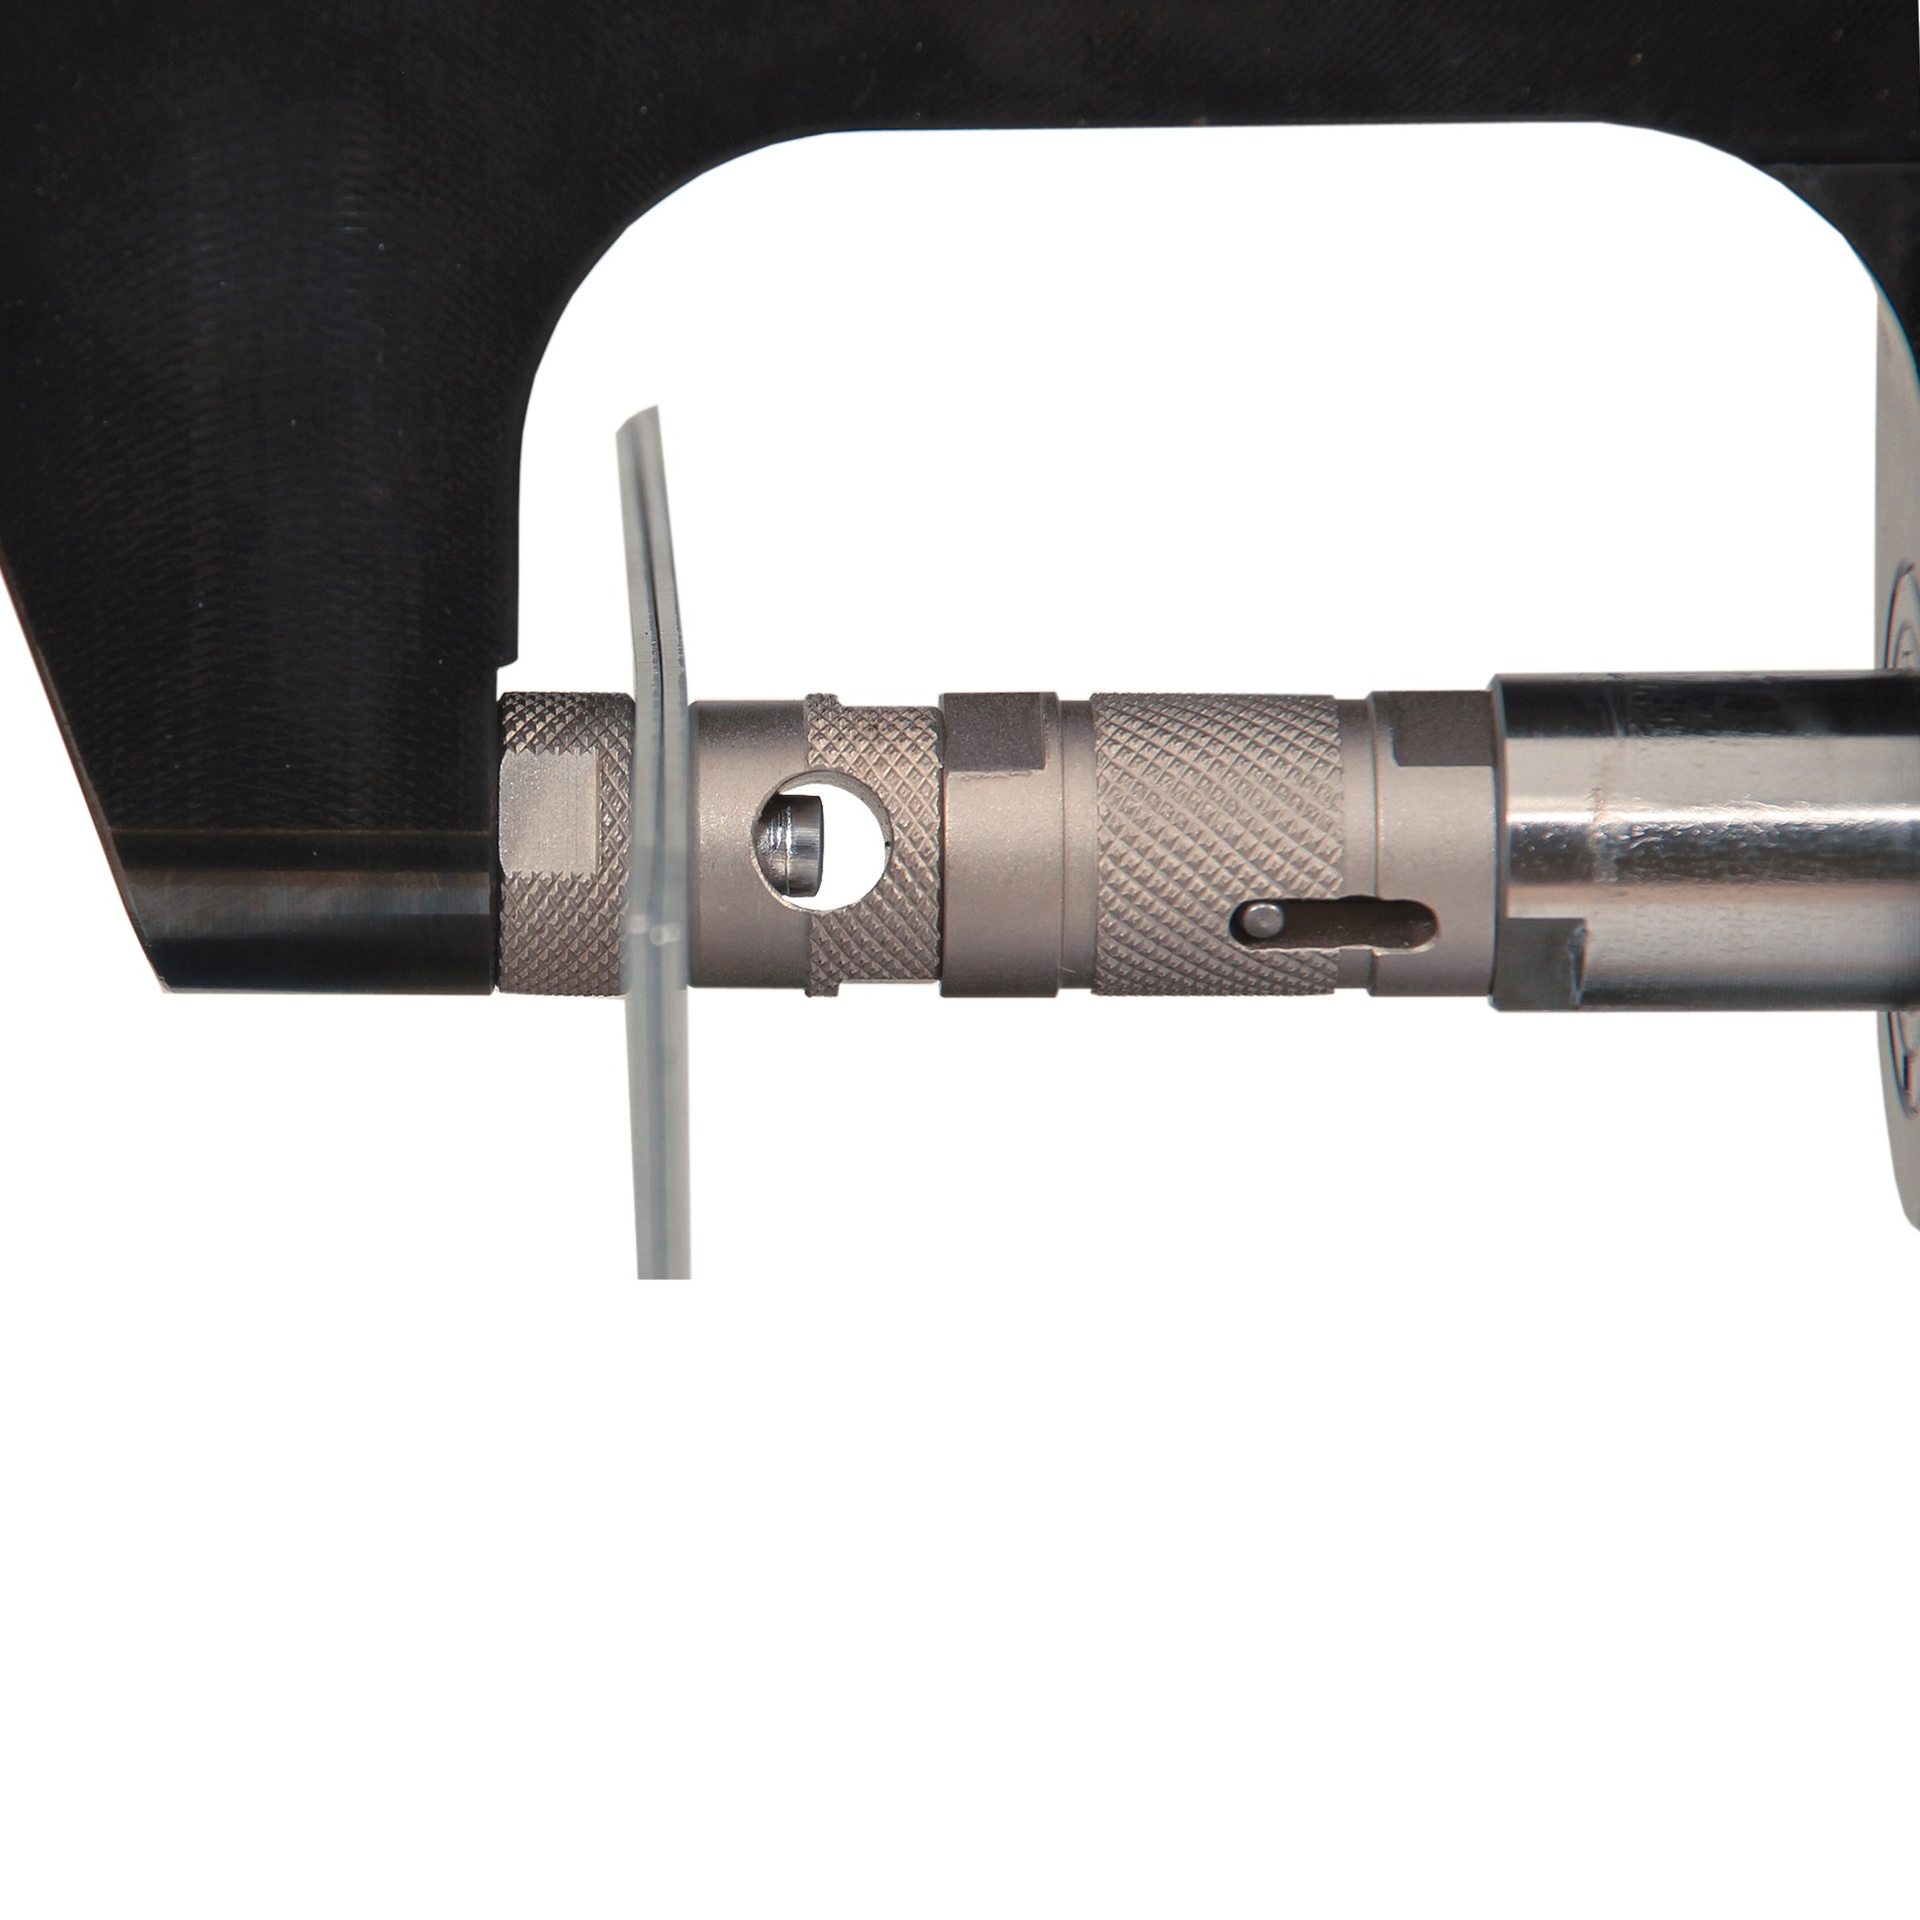 XPress 800 Standard Set Заклепочный инструмент для выдавливания и установки ремонтных заклепок. Wieländer+Schill - Германия фото